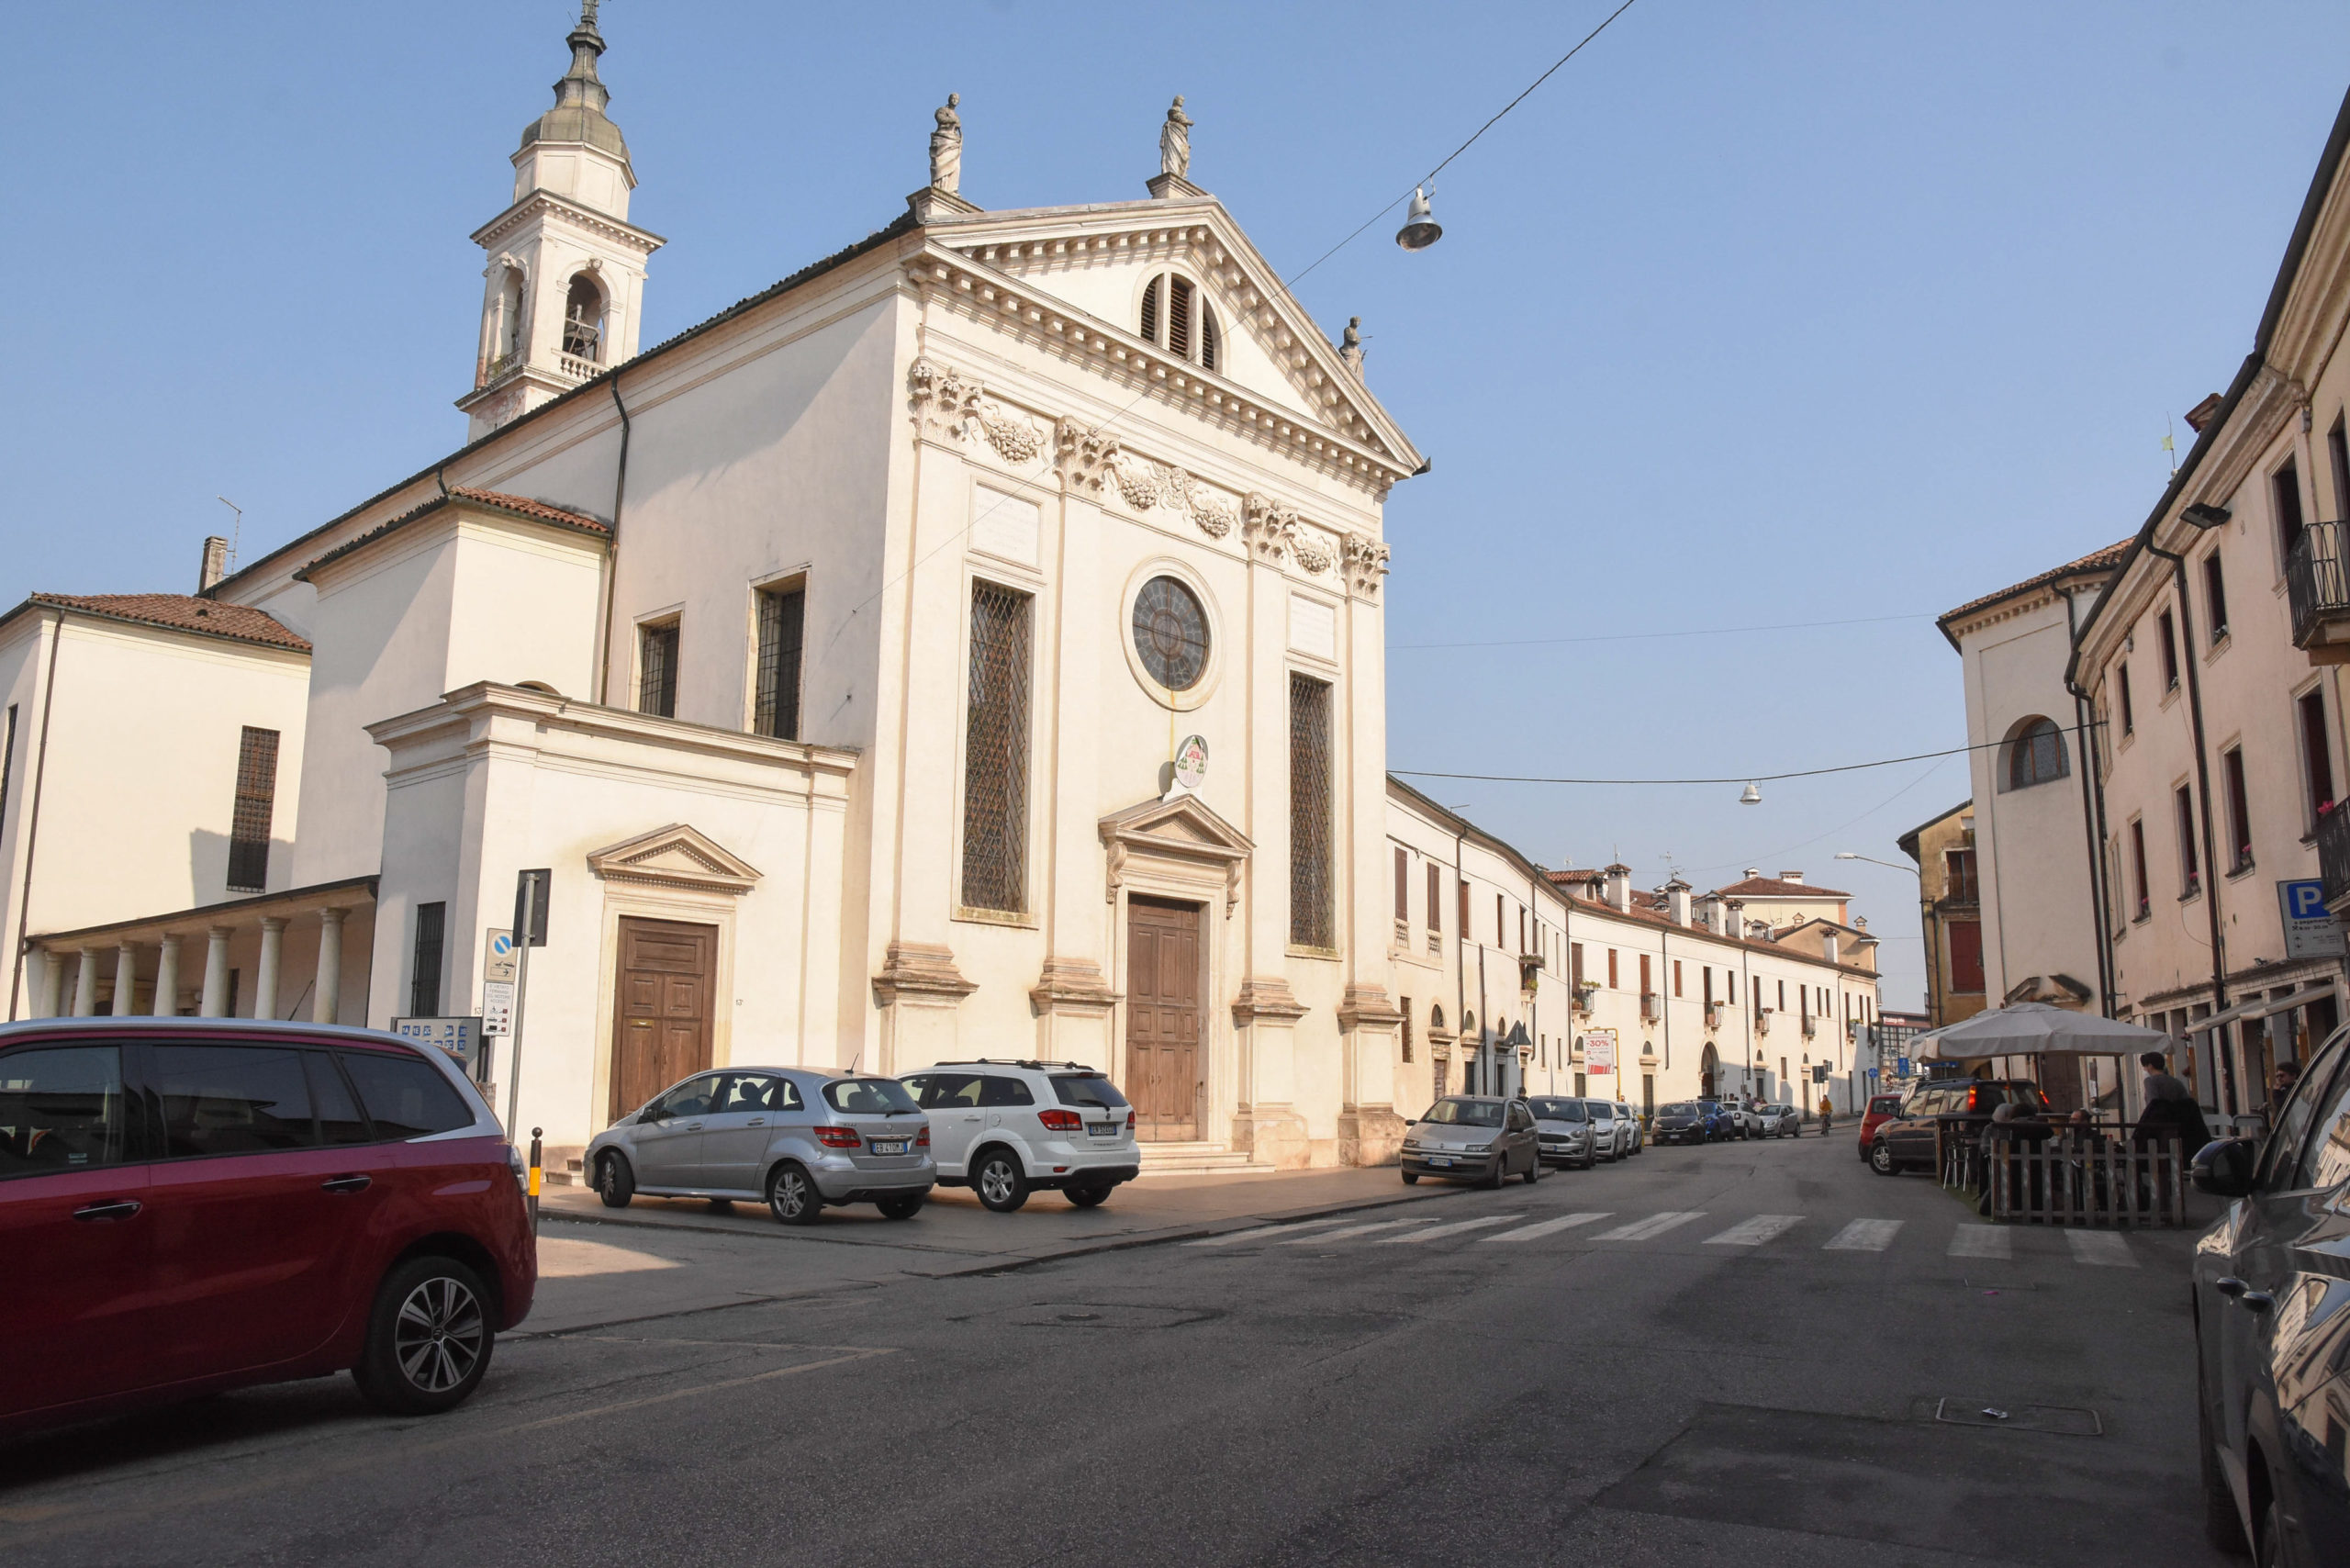 Contra Santa Caterina (Vicenza-Toniolo Ilaria-Colorfoto per Vipiù)